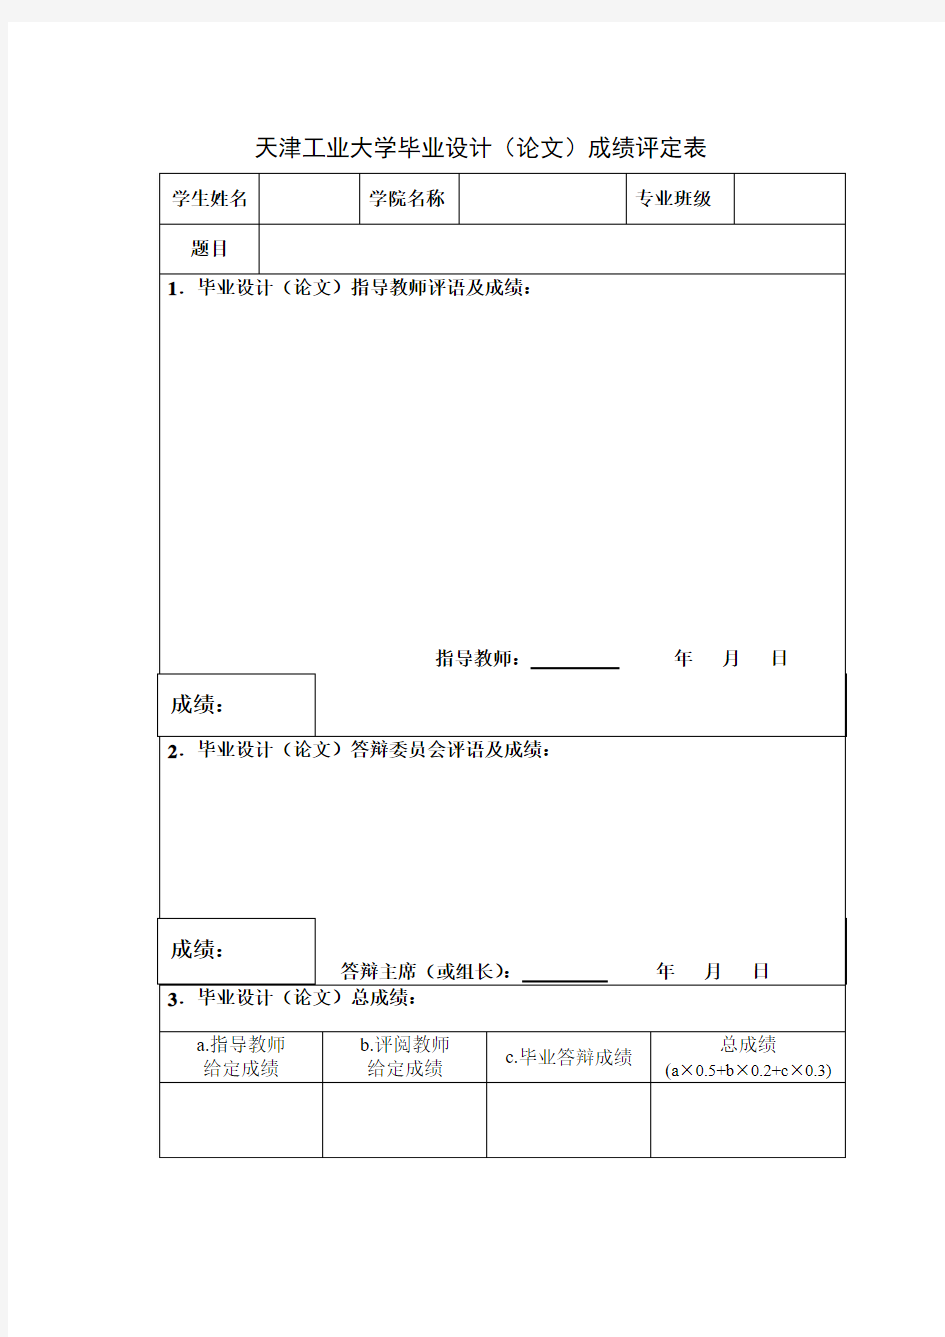 天津工业大学毕业设计(论文)成绩评定表